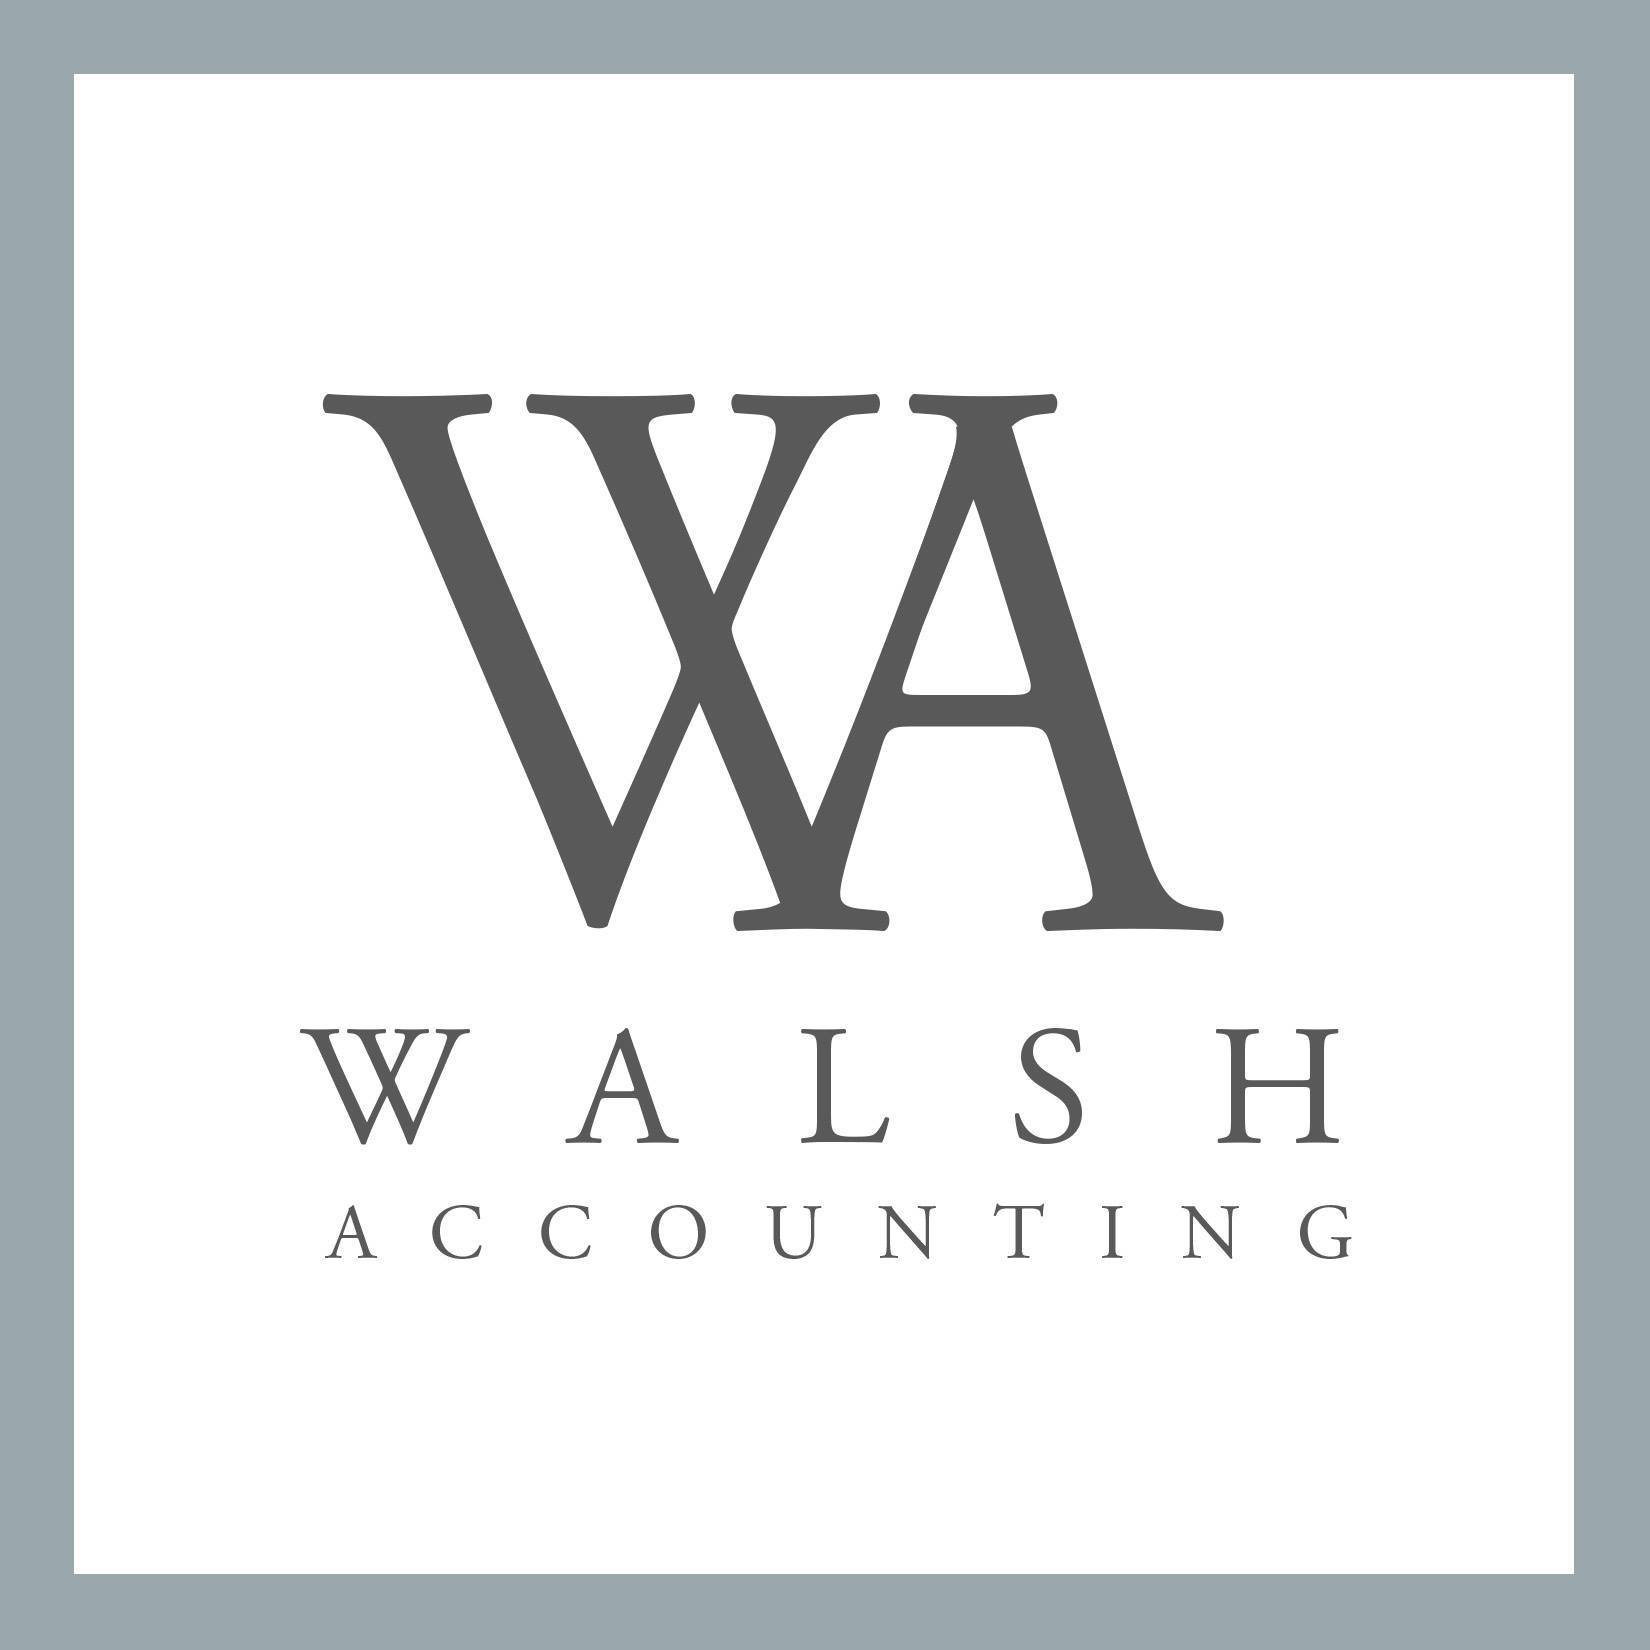 Walsh Accounting